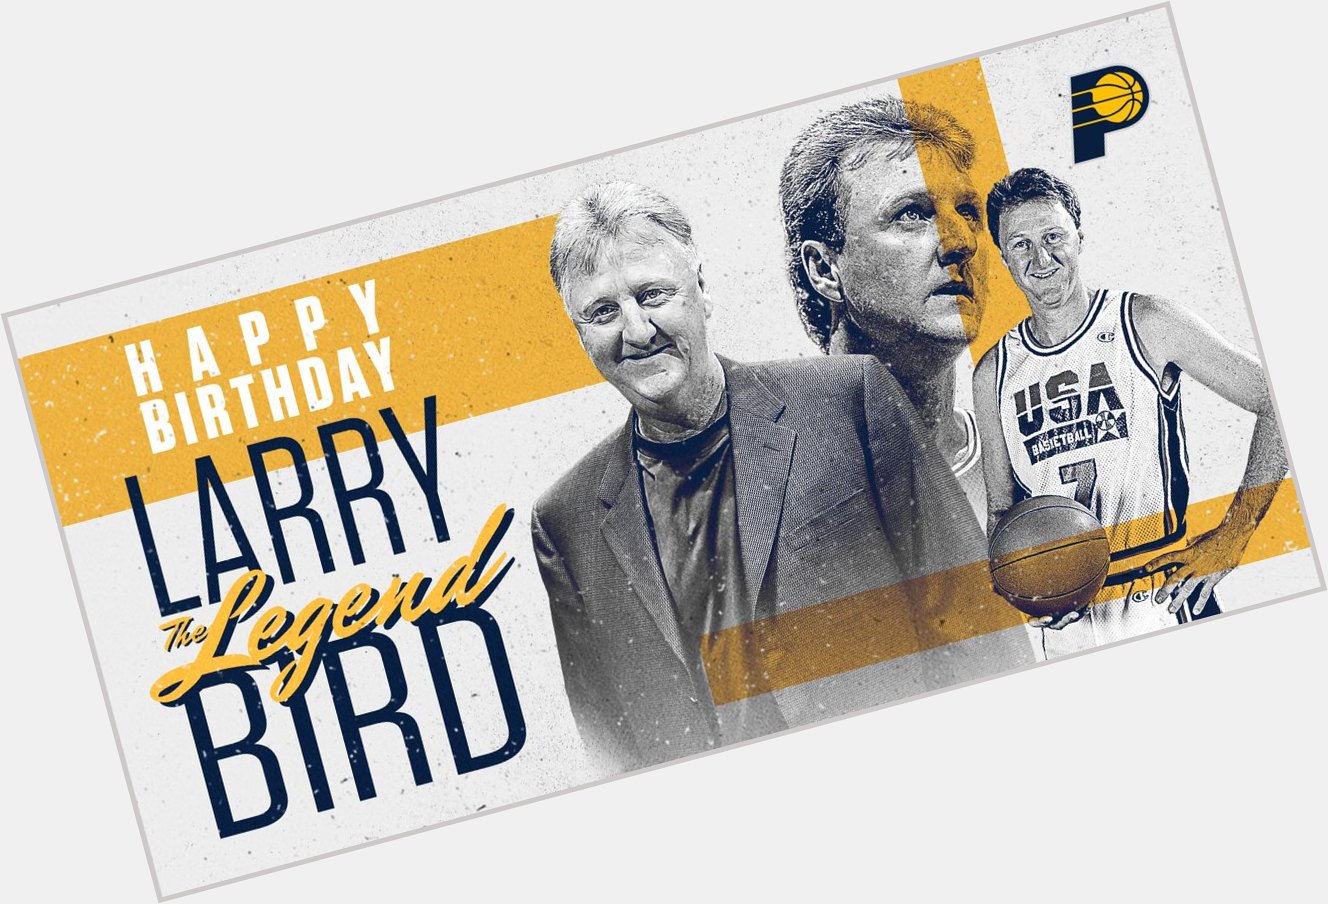 Happy birthday to the Legend, Larry Bird!  